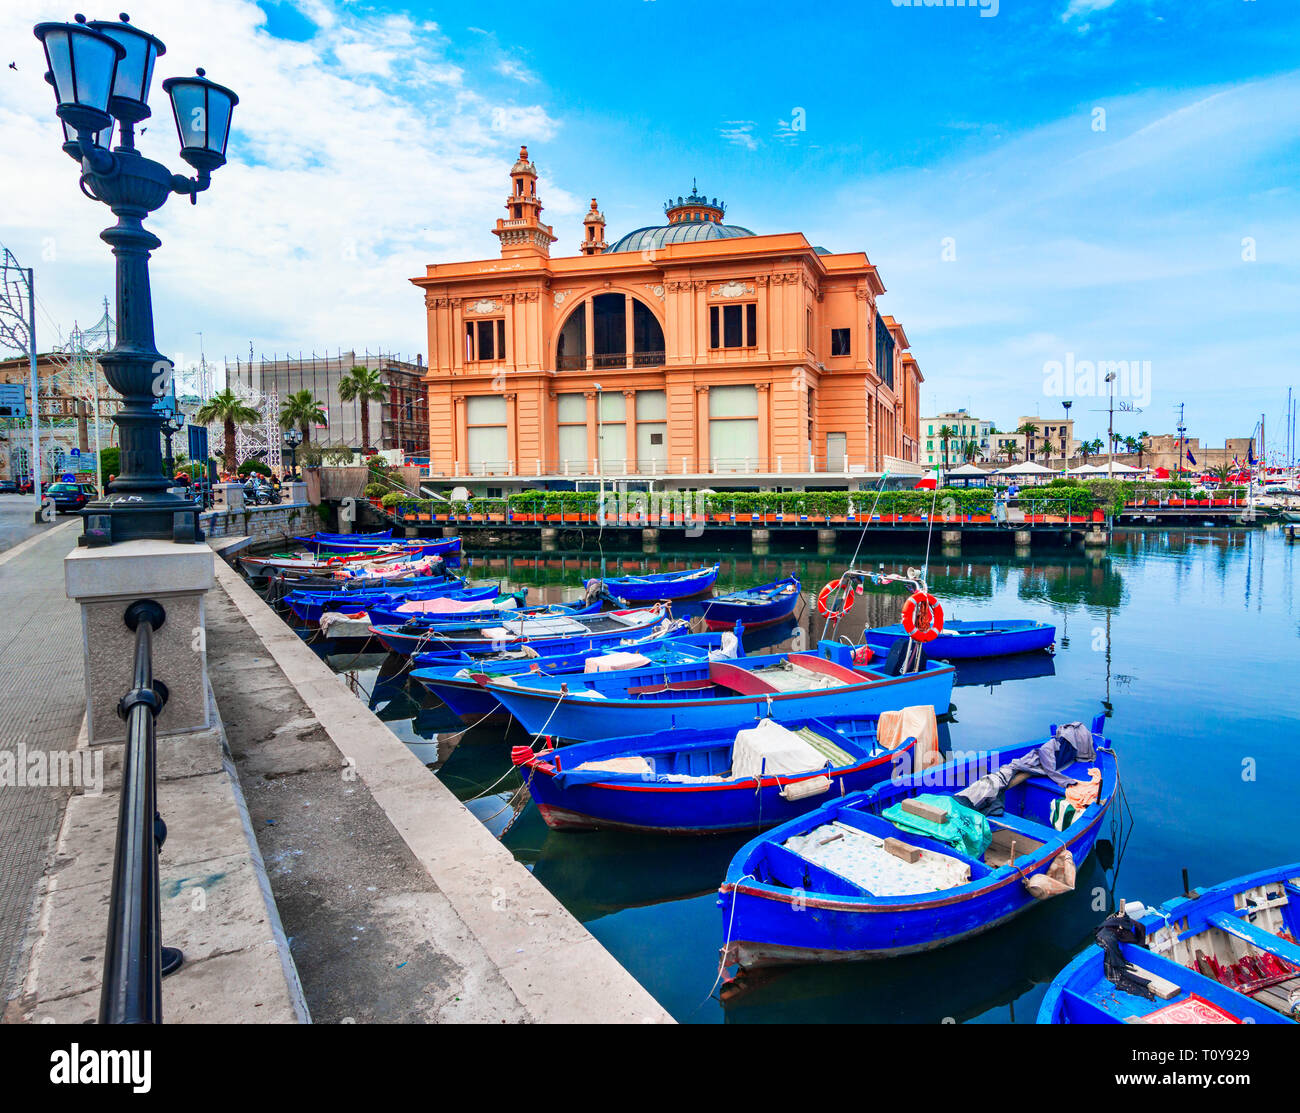 Bari, Italie, Pouilles : Street View de la Margherita Theatre dans le vieux port est un exemple rare de théâtre construit directement sur la mer, les Pouilles Banque D'Images